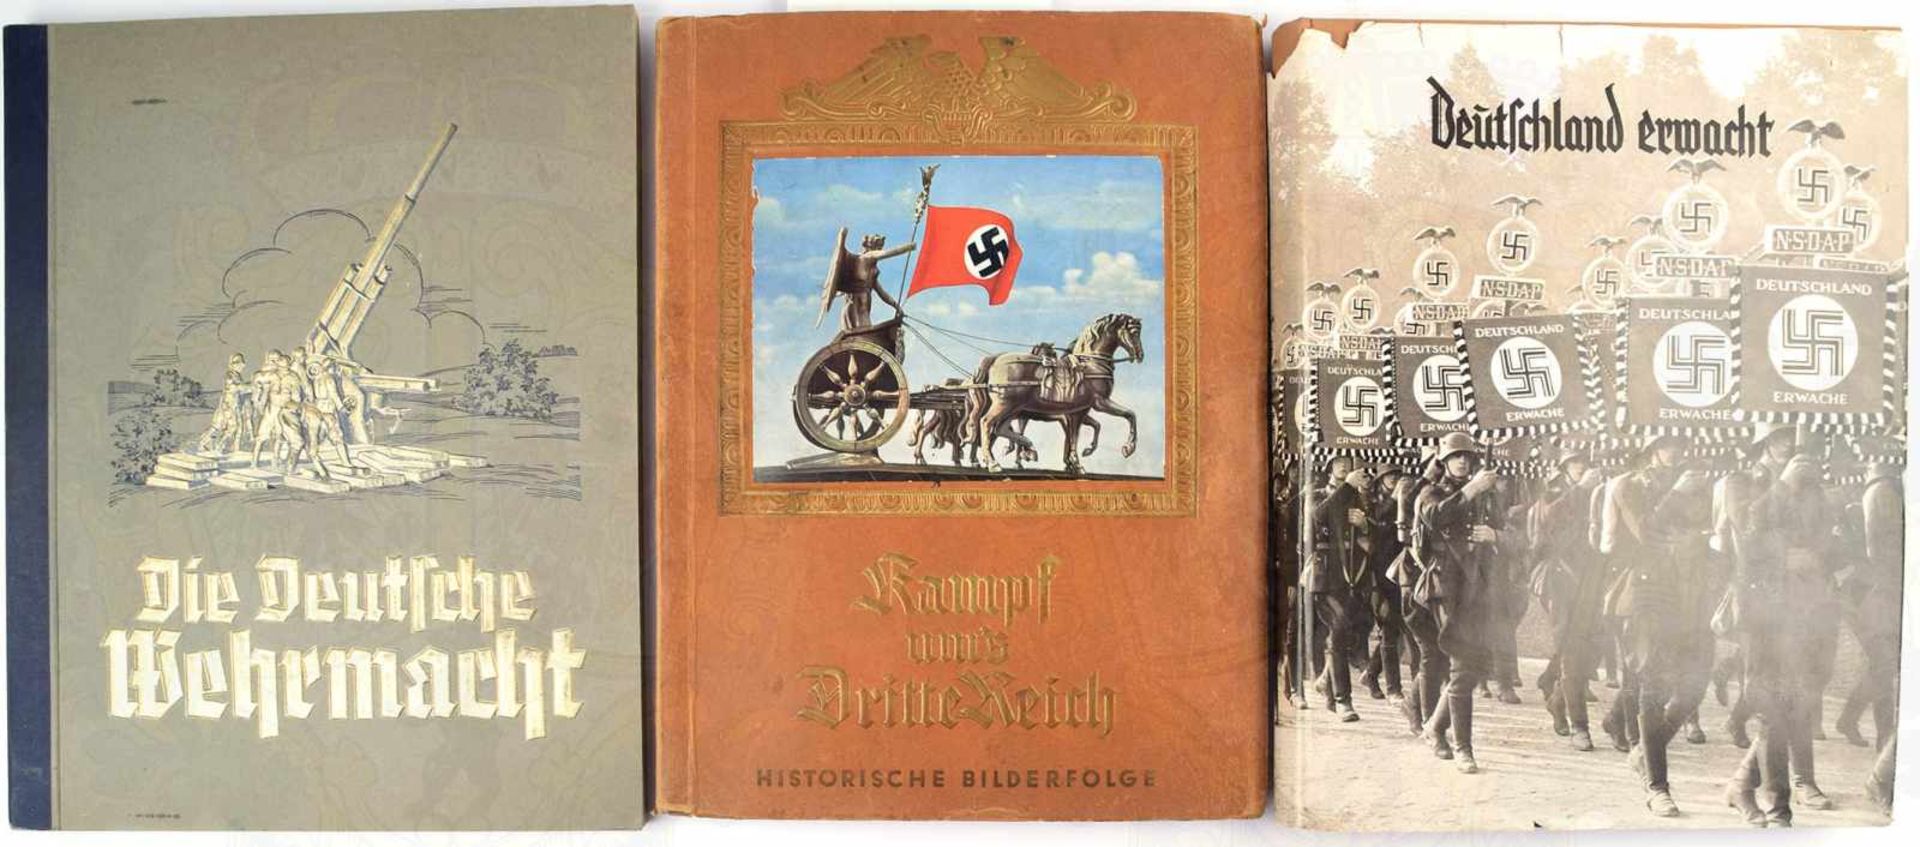 3 ALBEN, Deutschland erwacht, kpl.; Die deutsche Wehrmacht, kpl.; Kampf ums 3. Reich, (8 Bilder